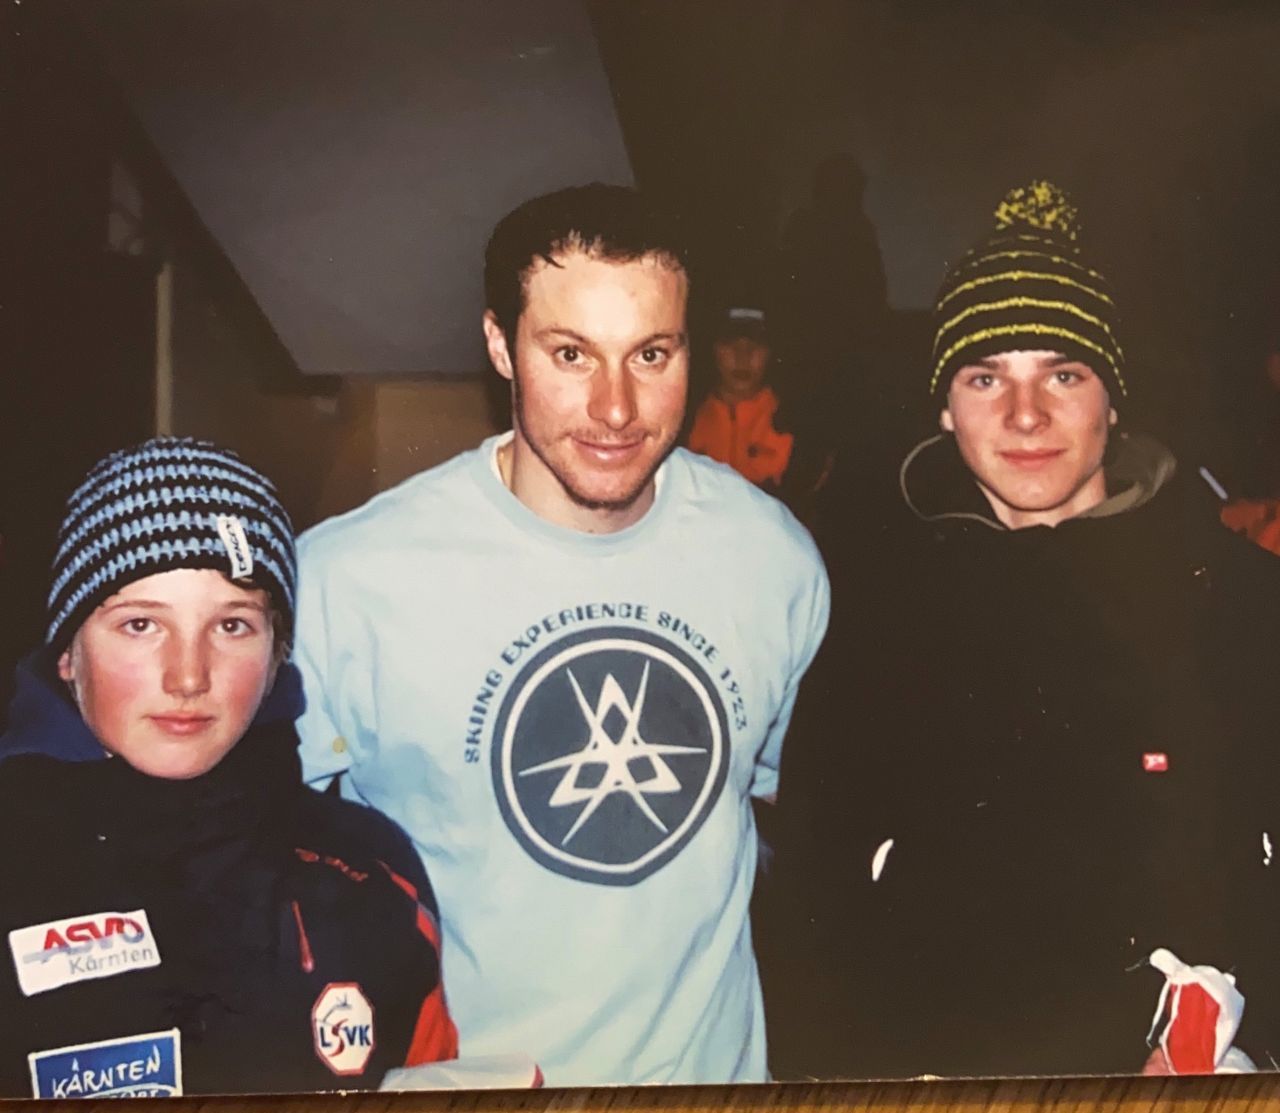 Auch Stars hatten Idole. Marco mit Manni Pranger – mittlerweile sind beide als Weltmeister Teil der Ski-Geschichte.